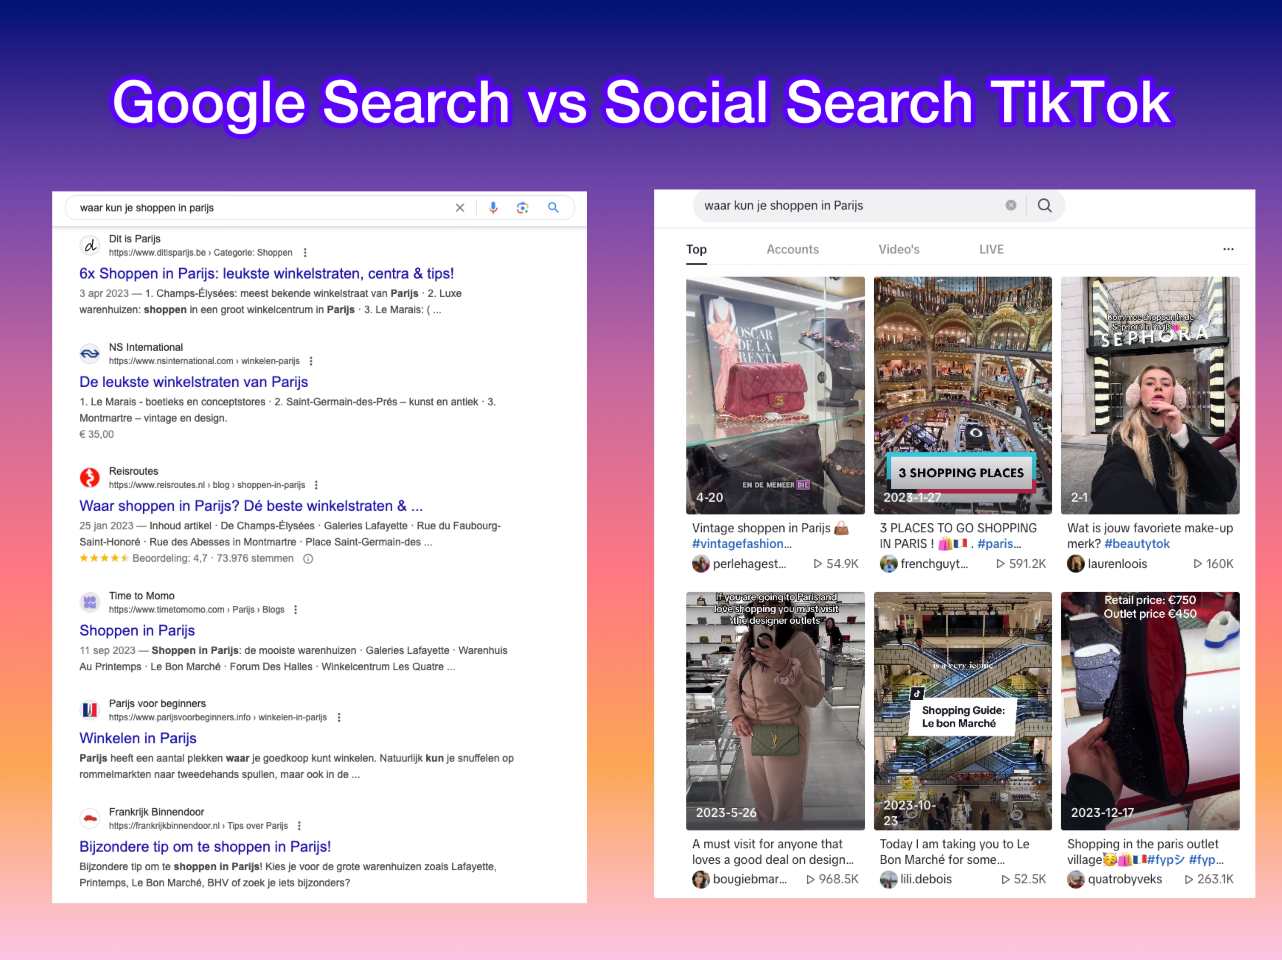 google search SEO vergeleken met social search op tiktok, wat zijn de verschillen